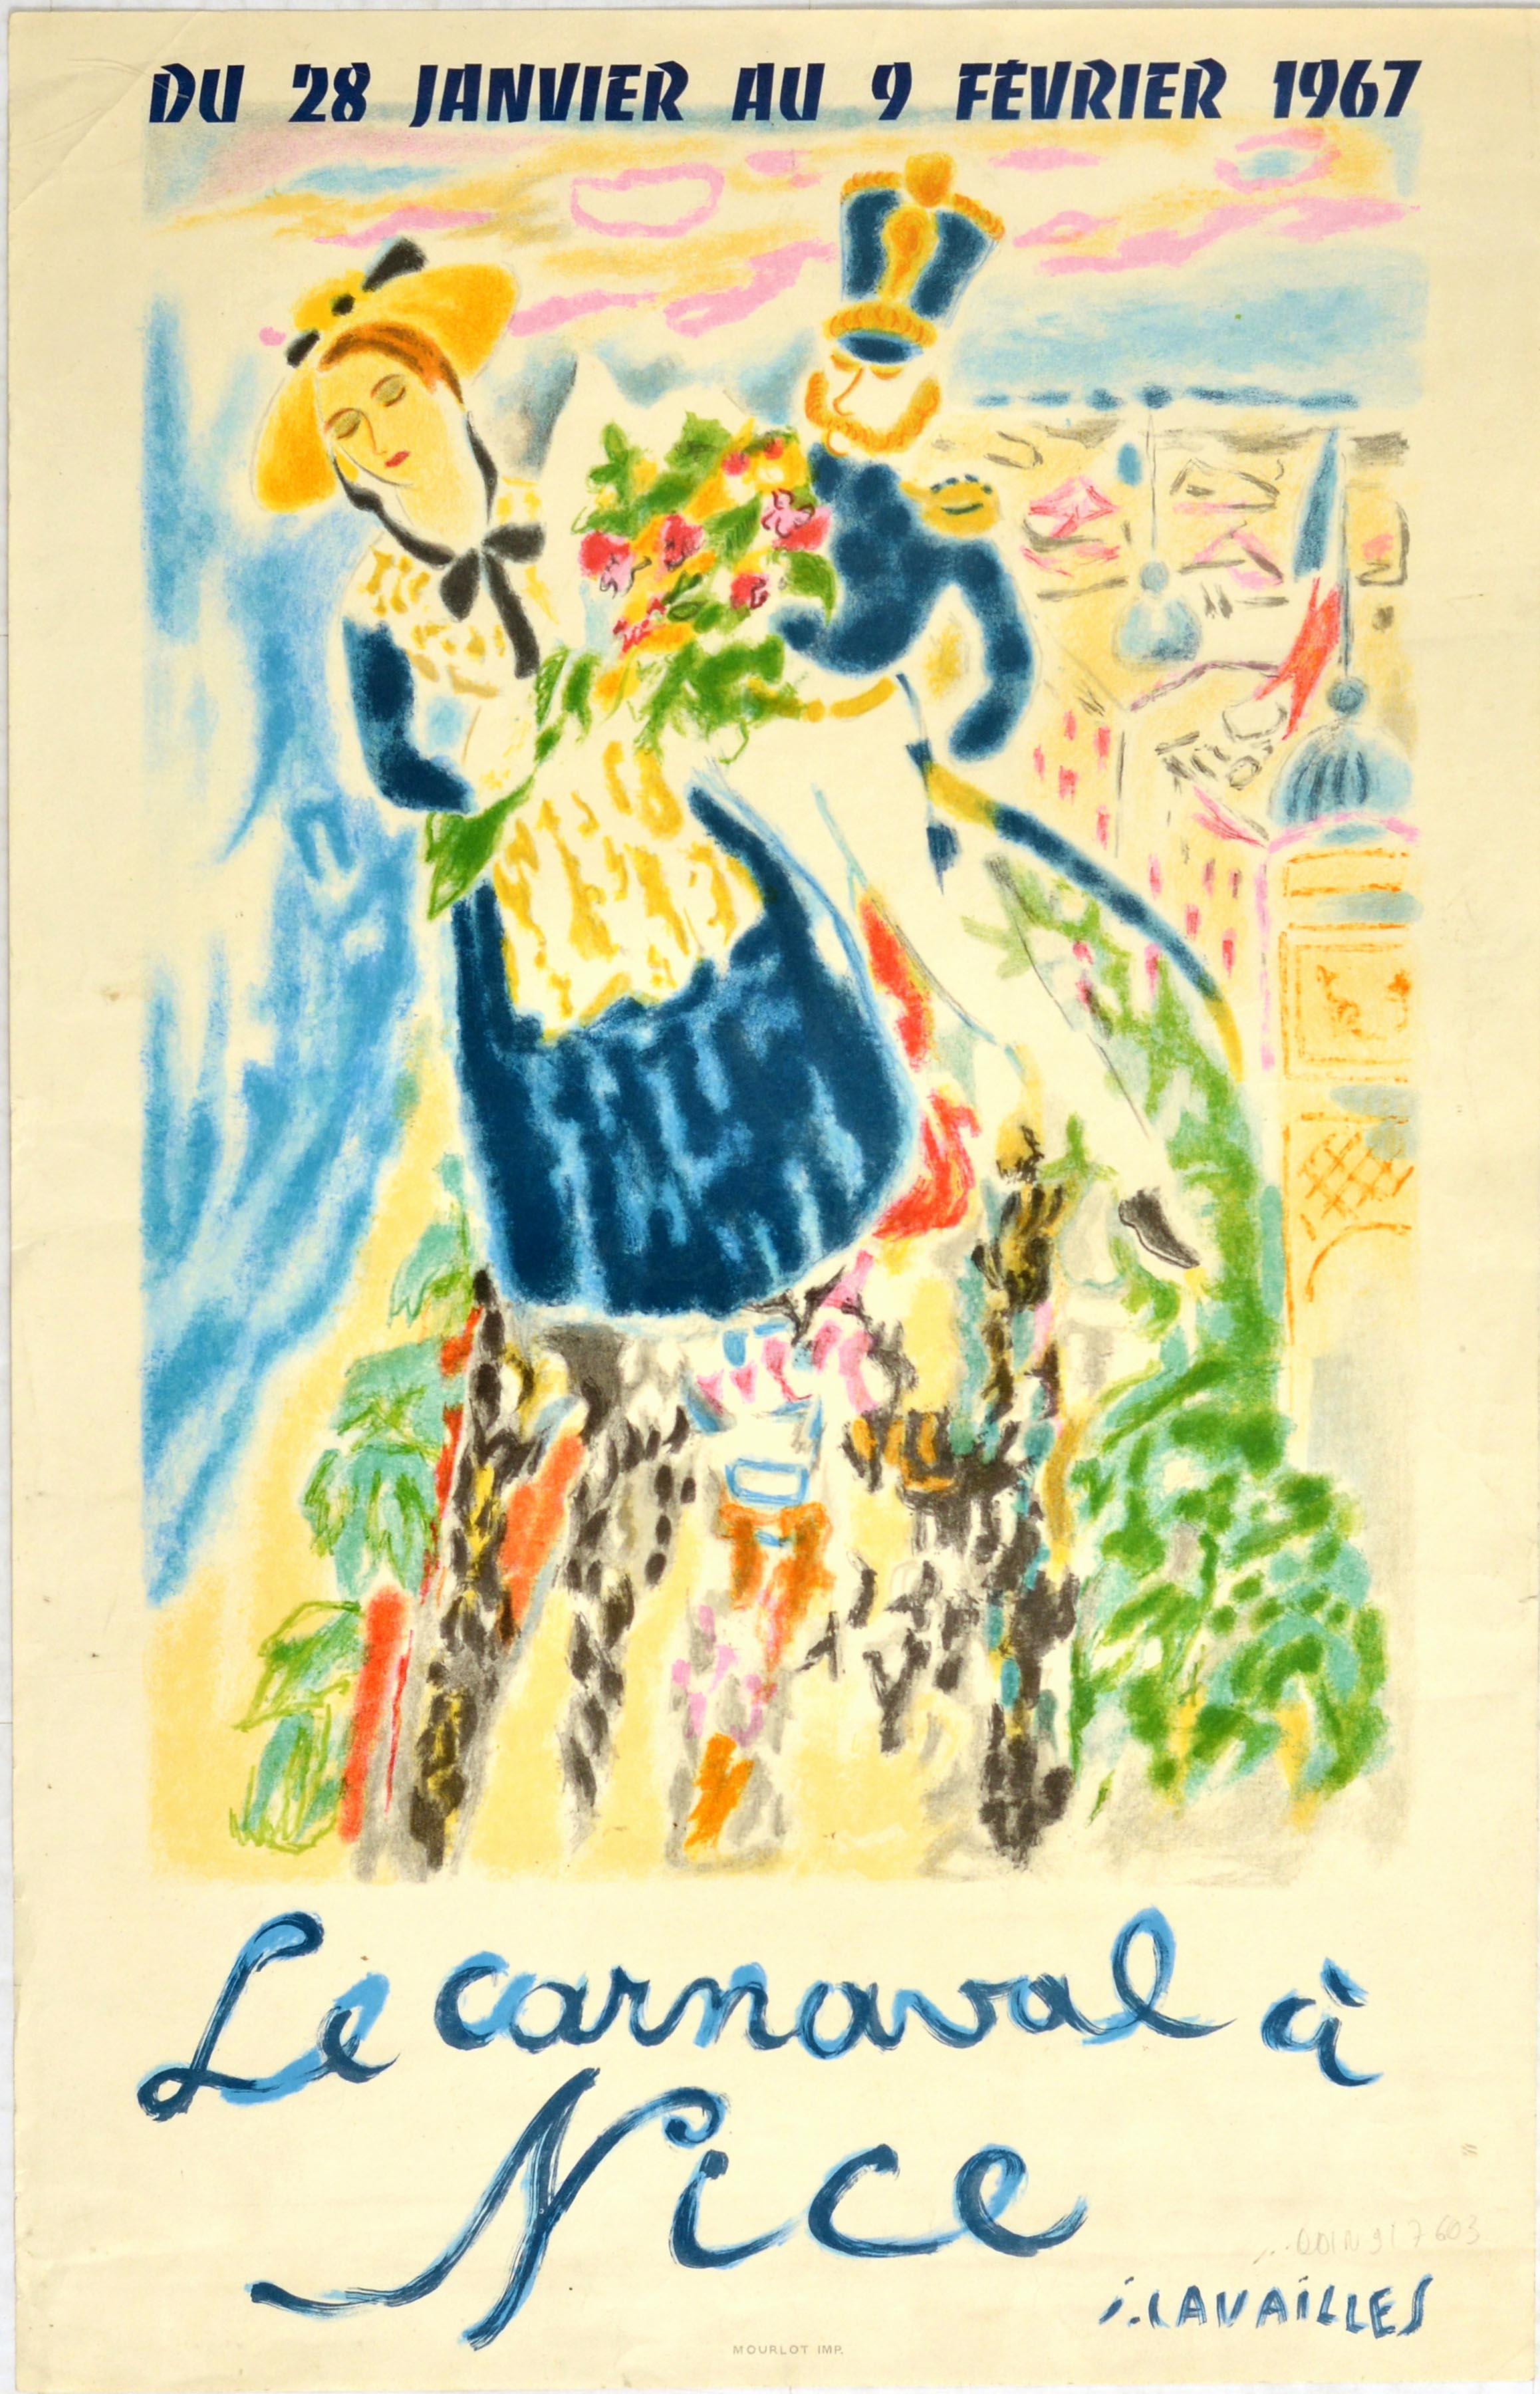 Affiche de voyage originale pour le Carnaval de Nice / Le Carnaval a Nice du 28 janvier au 9 février 1967. L'affiche présente un dessin coloré du peintre français Jules Cavailles (1901-1977) représentant une dame portant des vêtements traditionnels